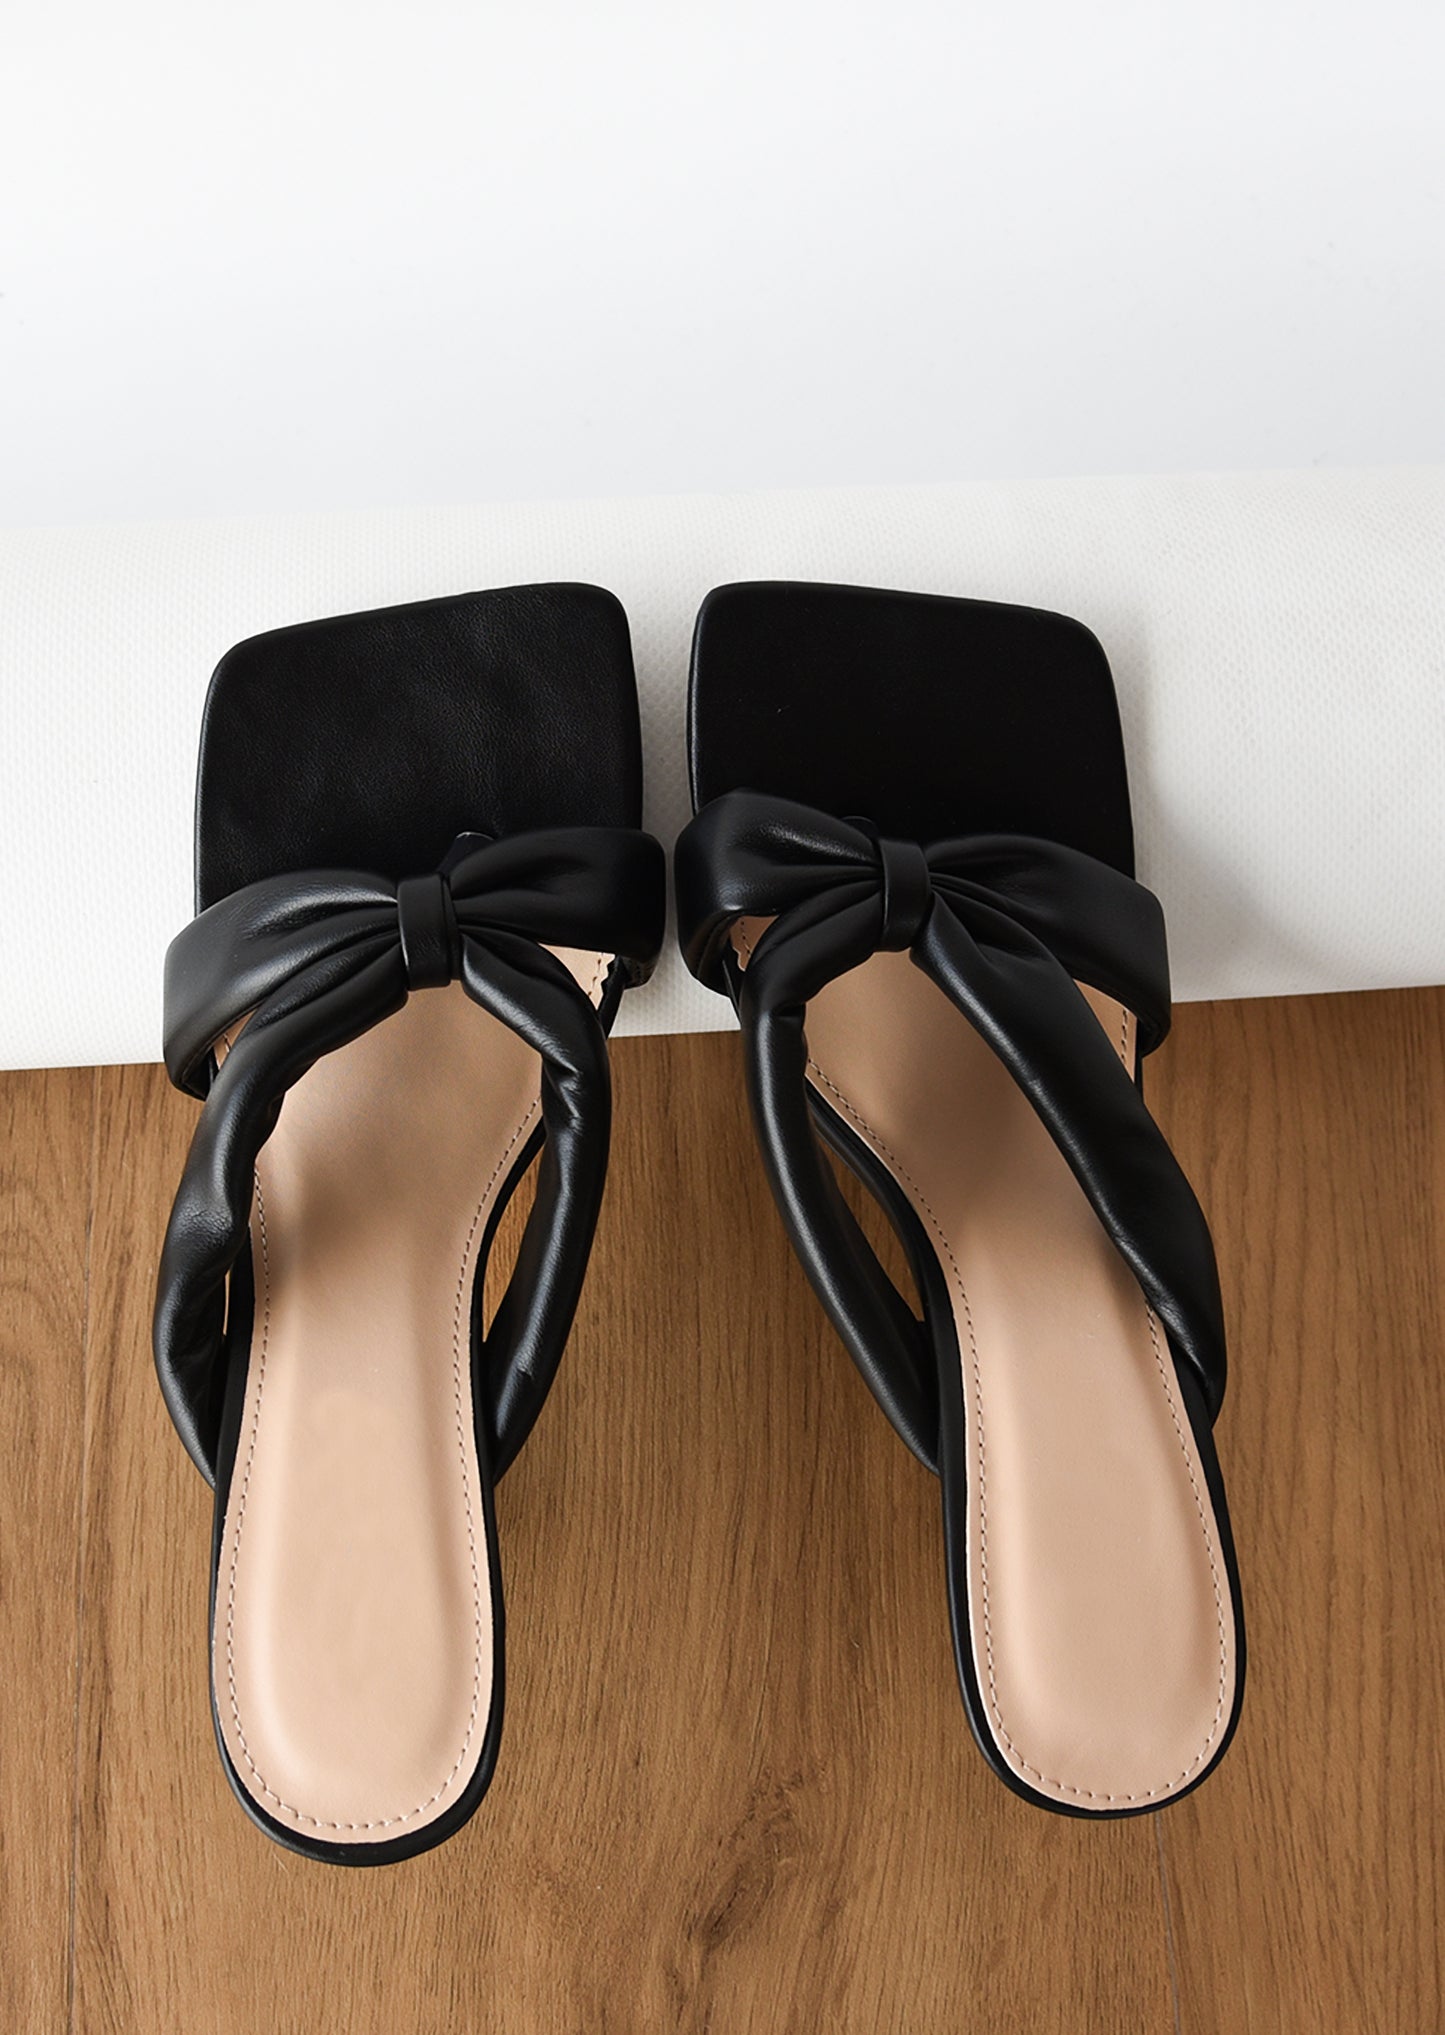 Sandalias negras de tacón estilo chancla y acabado acolchado